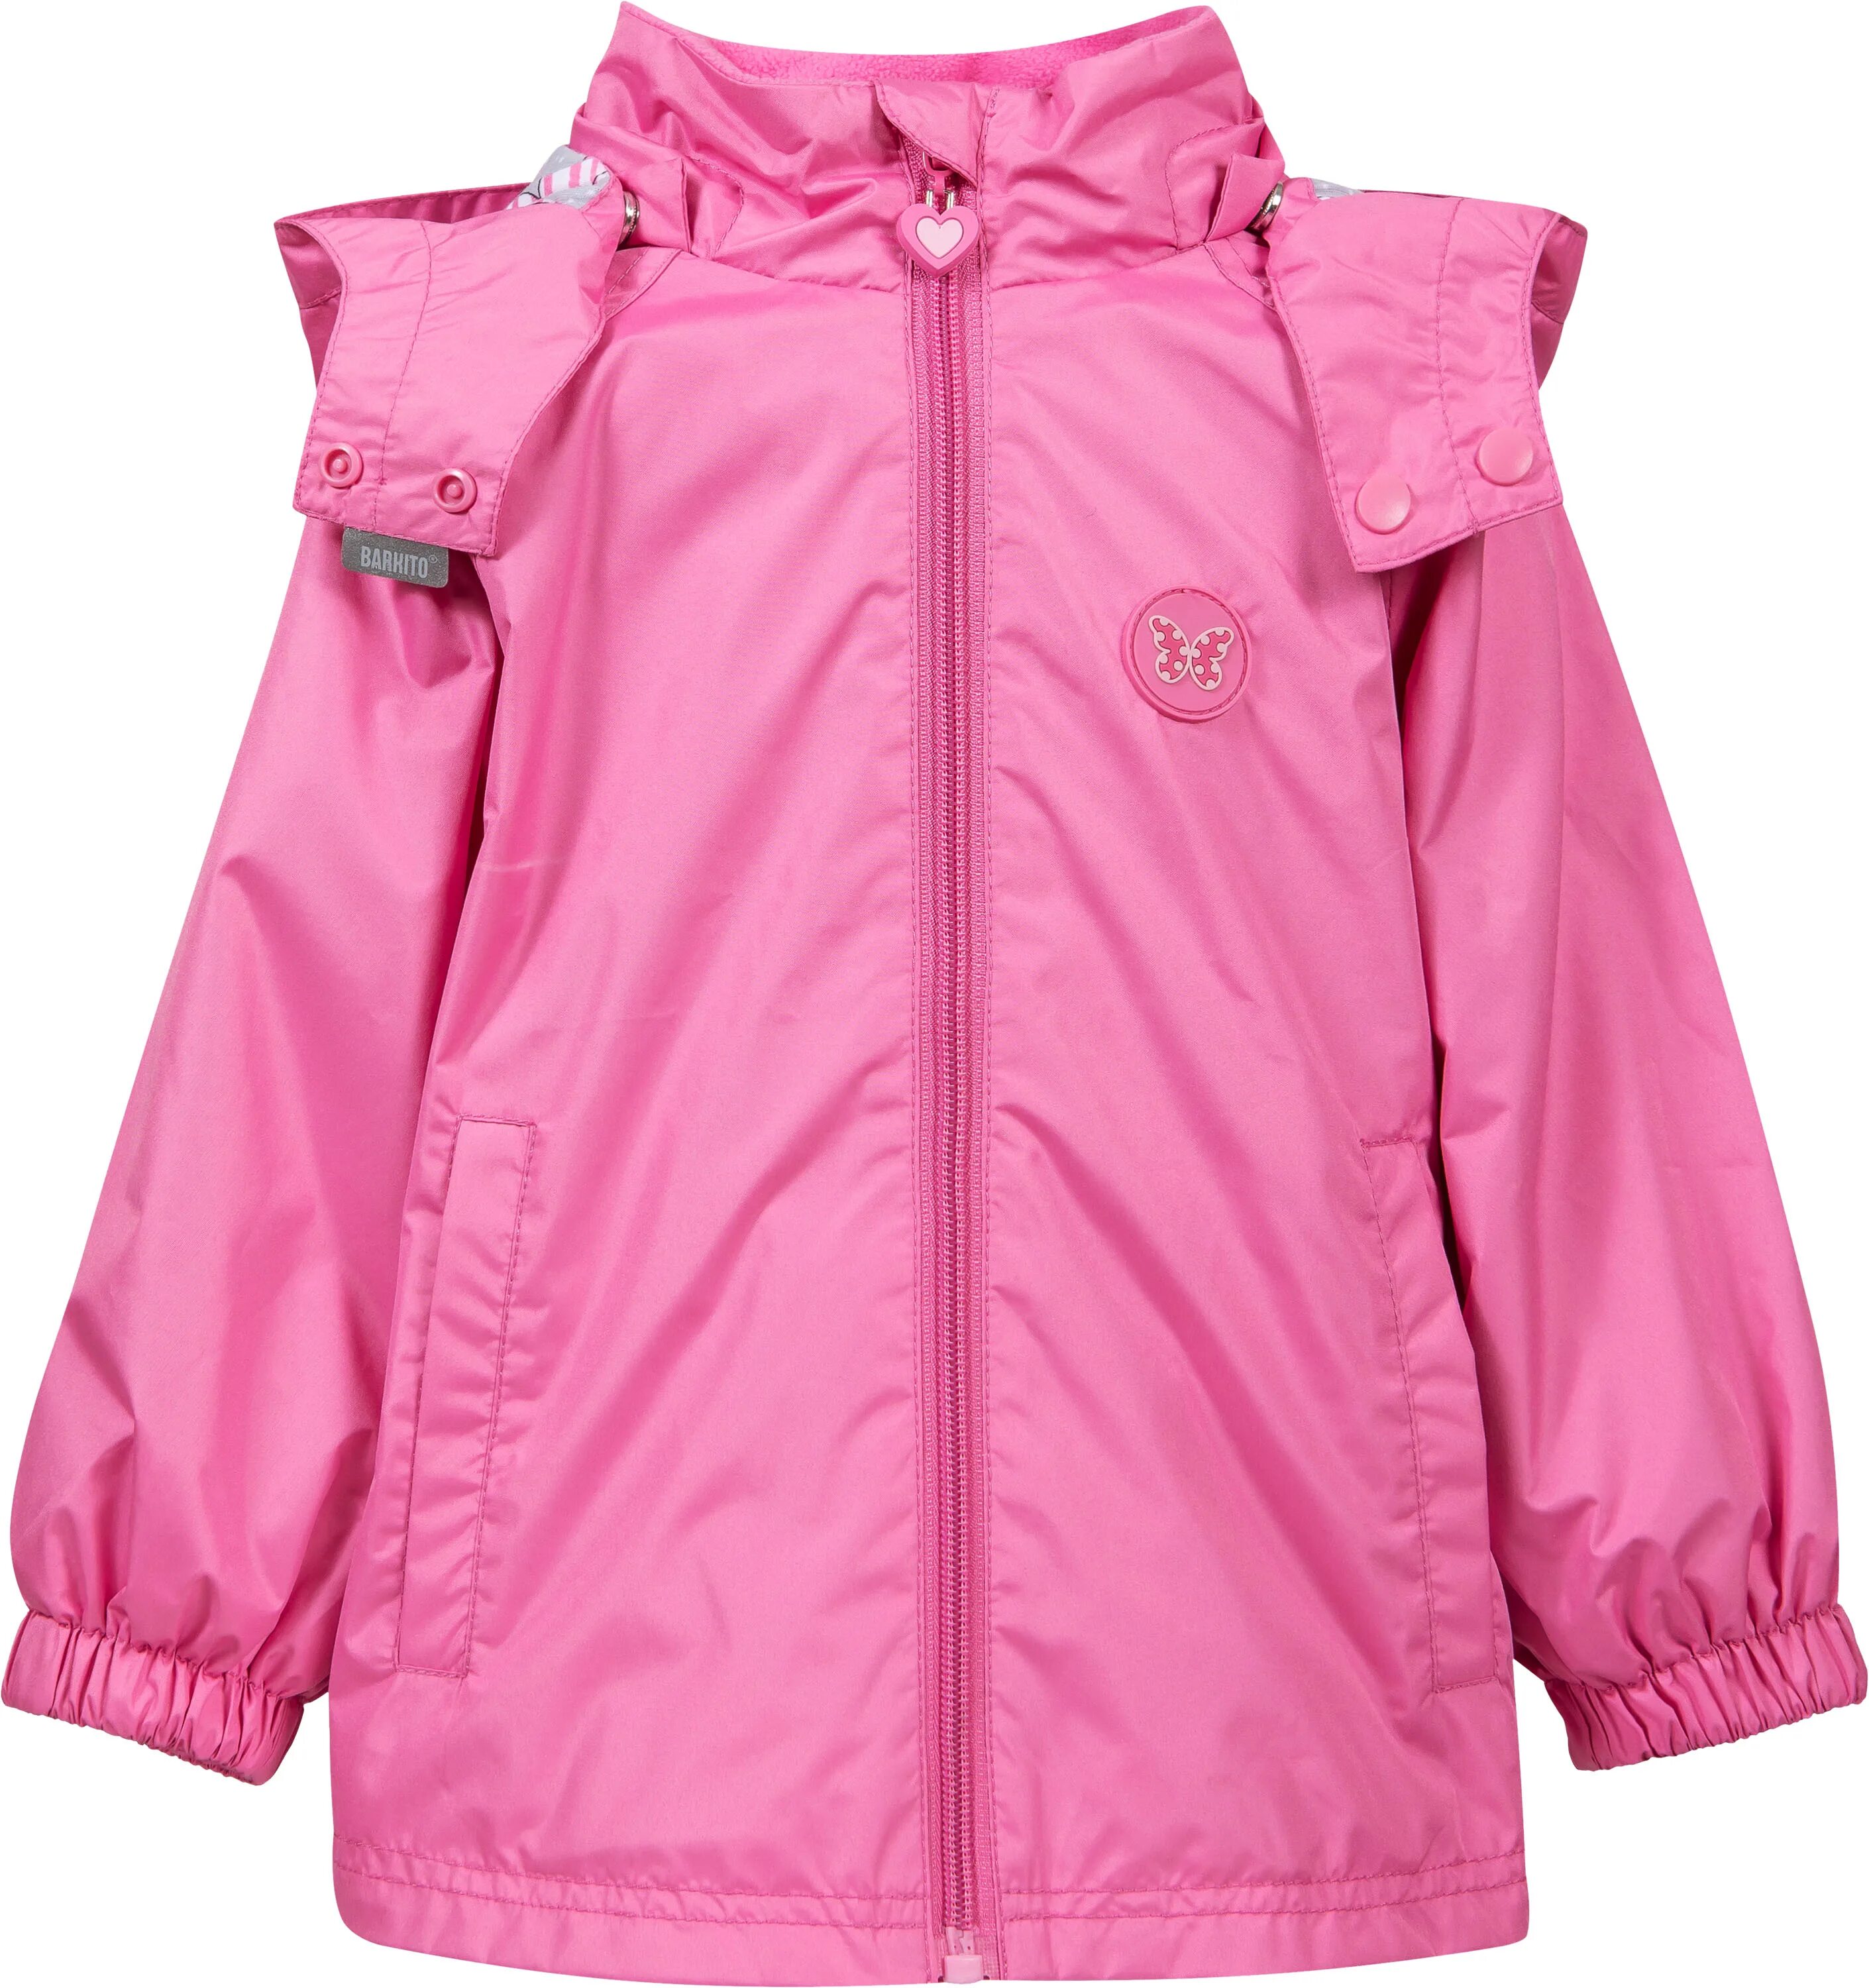 Ветровка для девочки купить. Куртка Баркито для девочки. Ветровка Баркито детская. Куртка Баркито для девочки розовая. Куртка Баркито розовая 80.